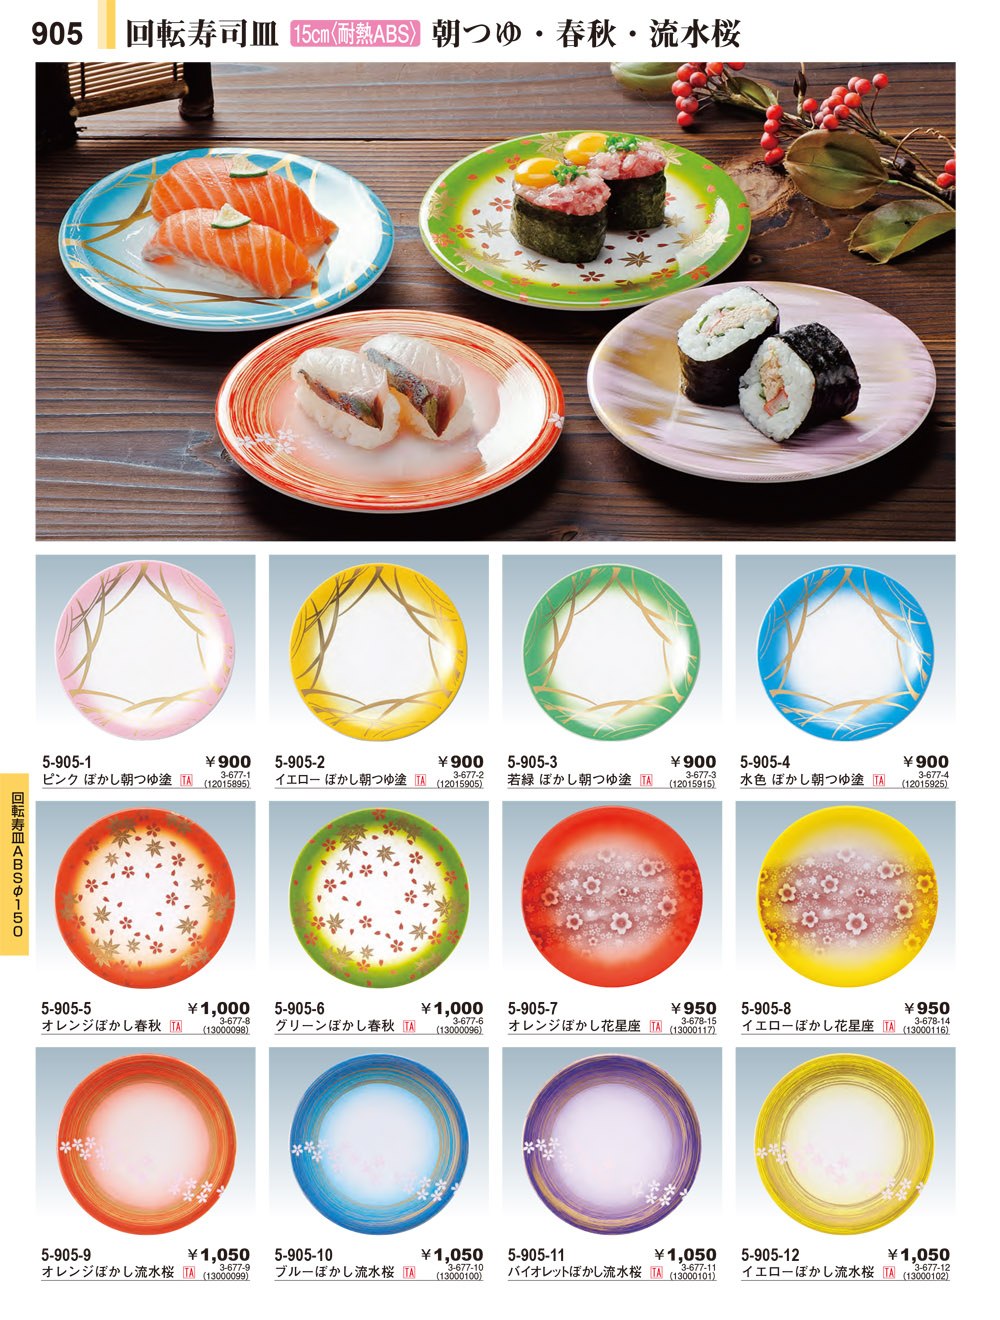 0円 50%OFF! 寿司皿 竹料理寿司橋船創造的な寿司刺身プレート大皿寿司食器装飾飾り 色 : Wood Color Size 43×22cm